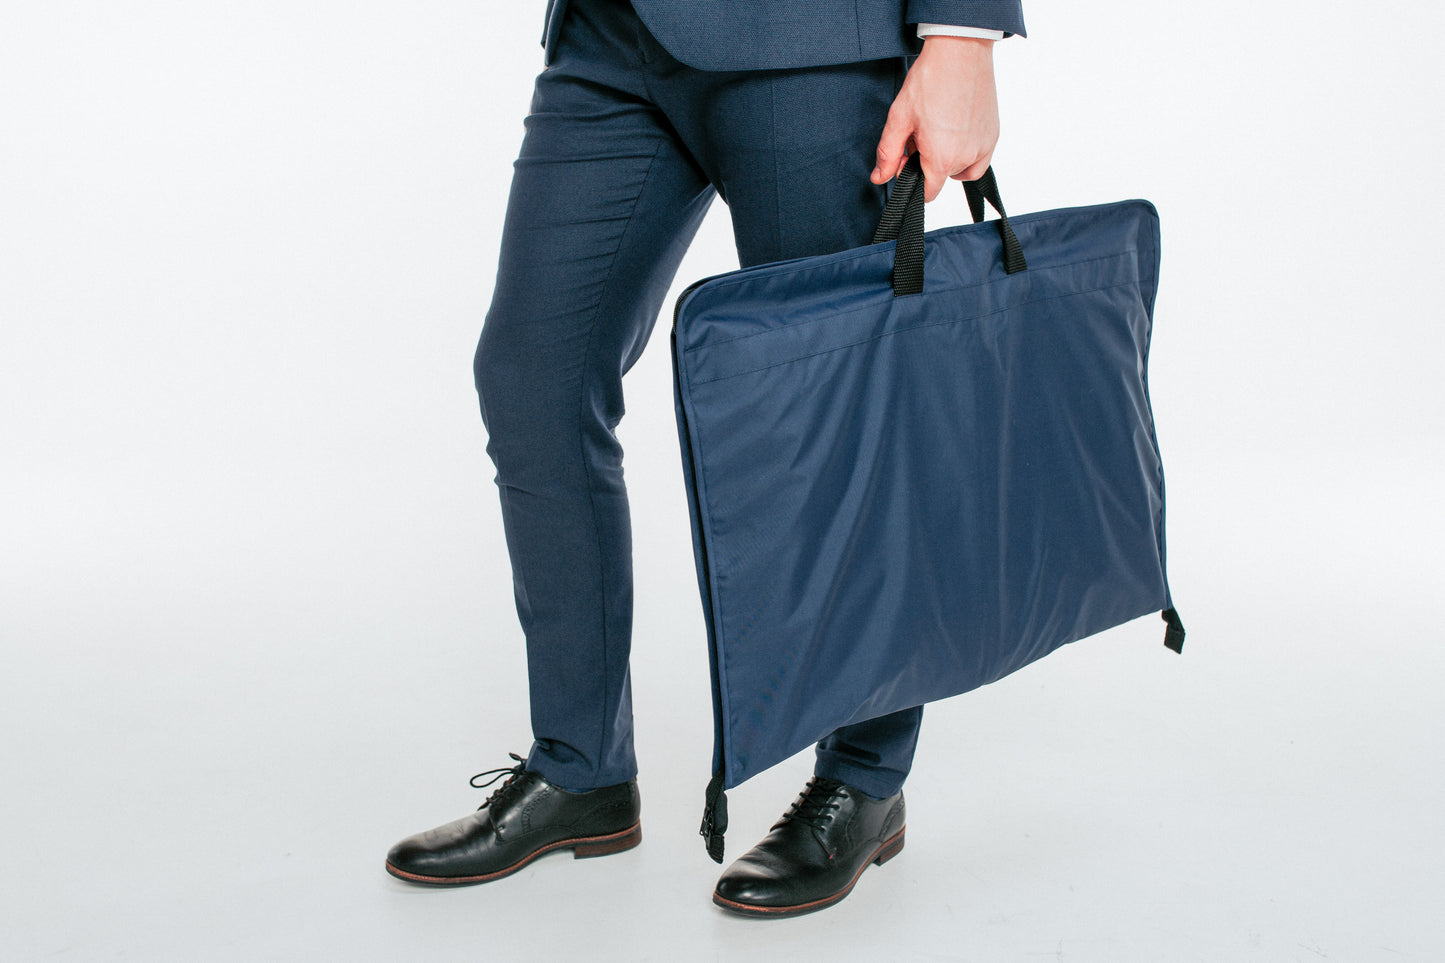 Navy blue BUSINESS suit bag